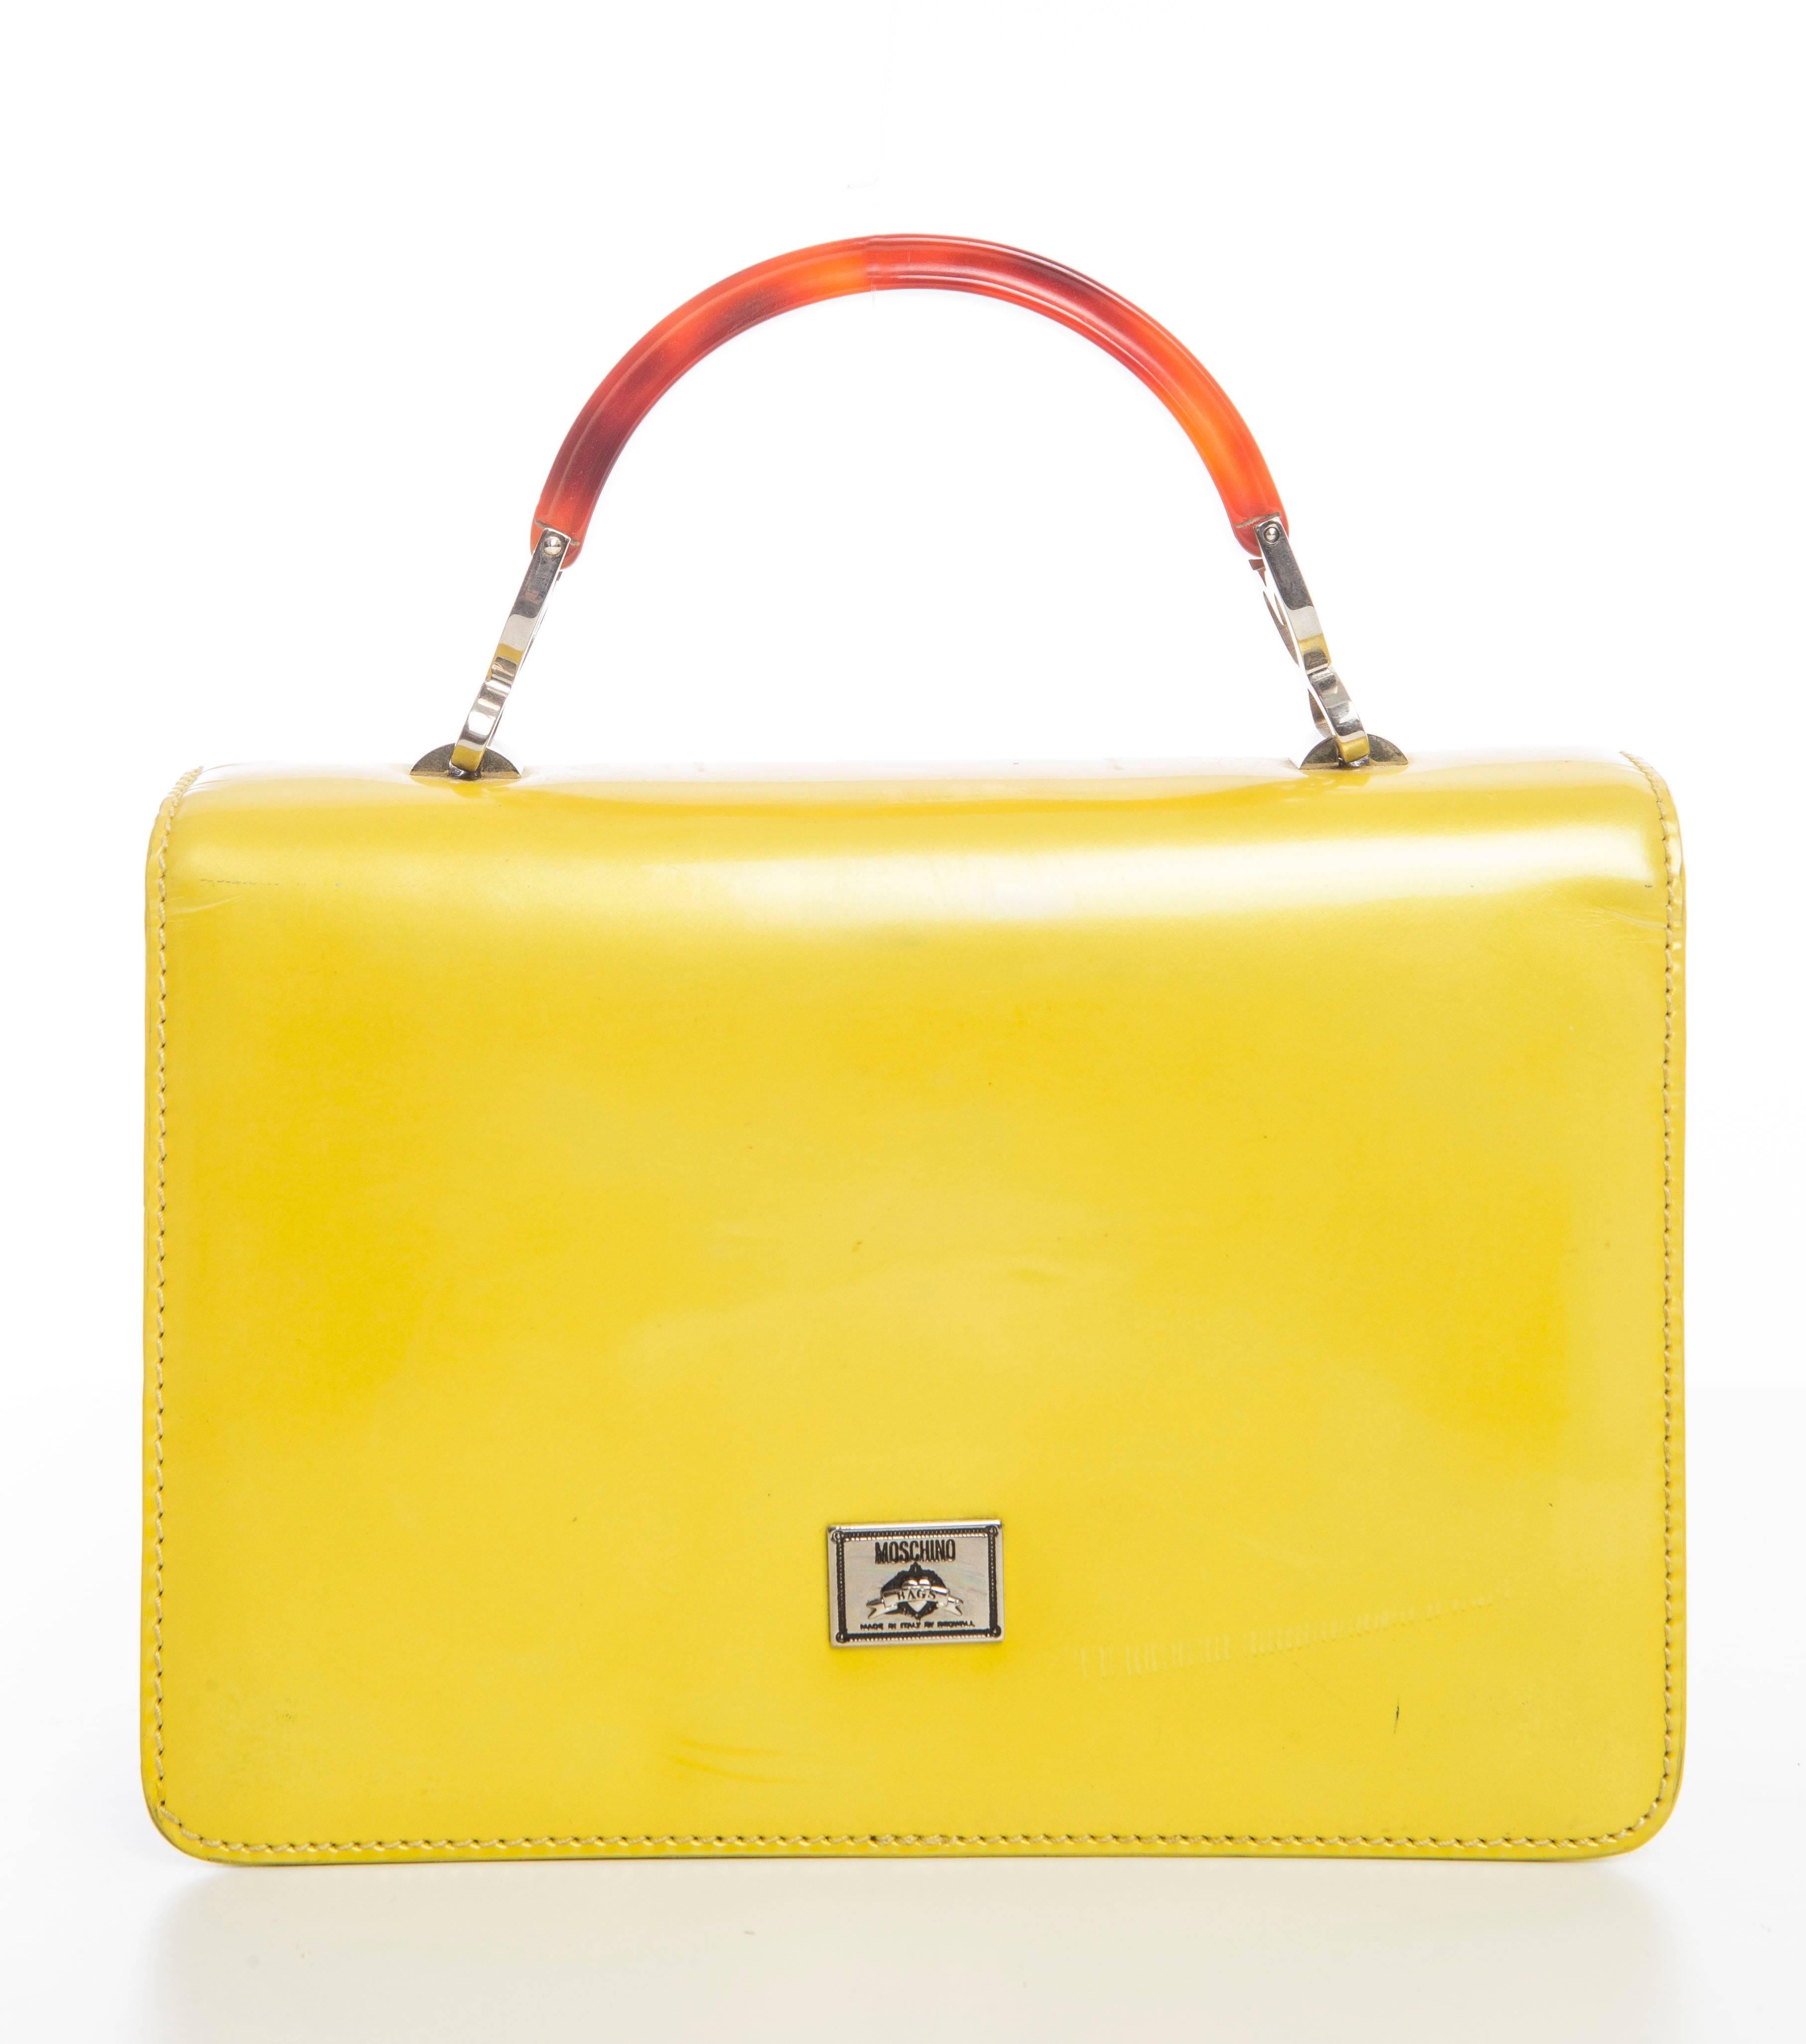 Women's Moschino Yellow Leather Handbag, Circa 1990's